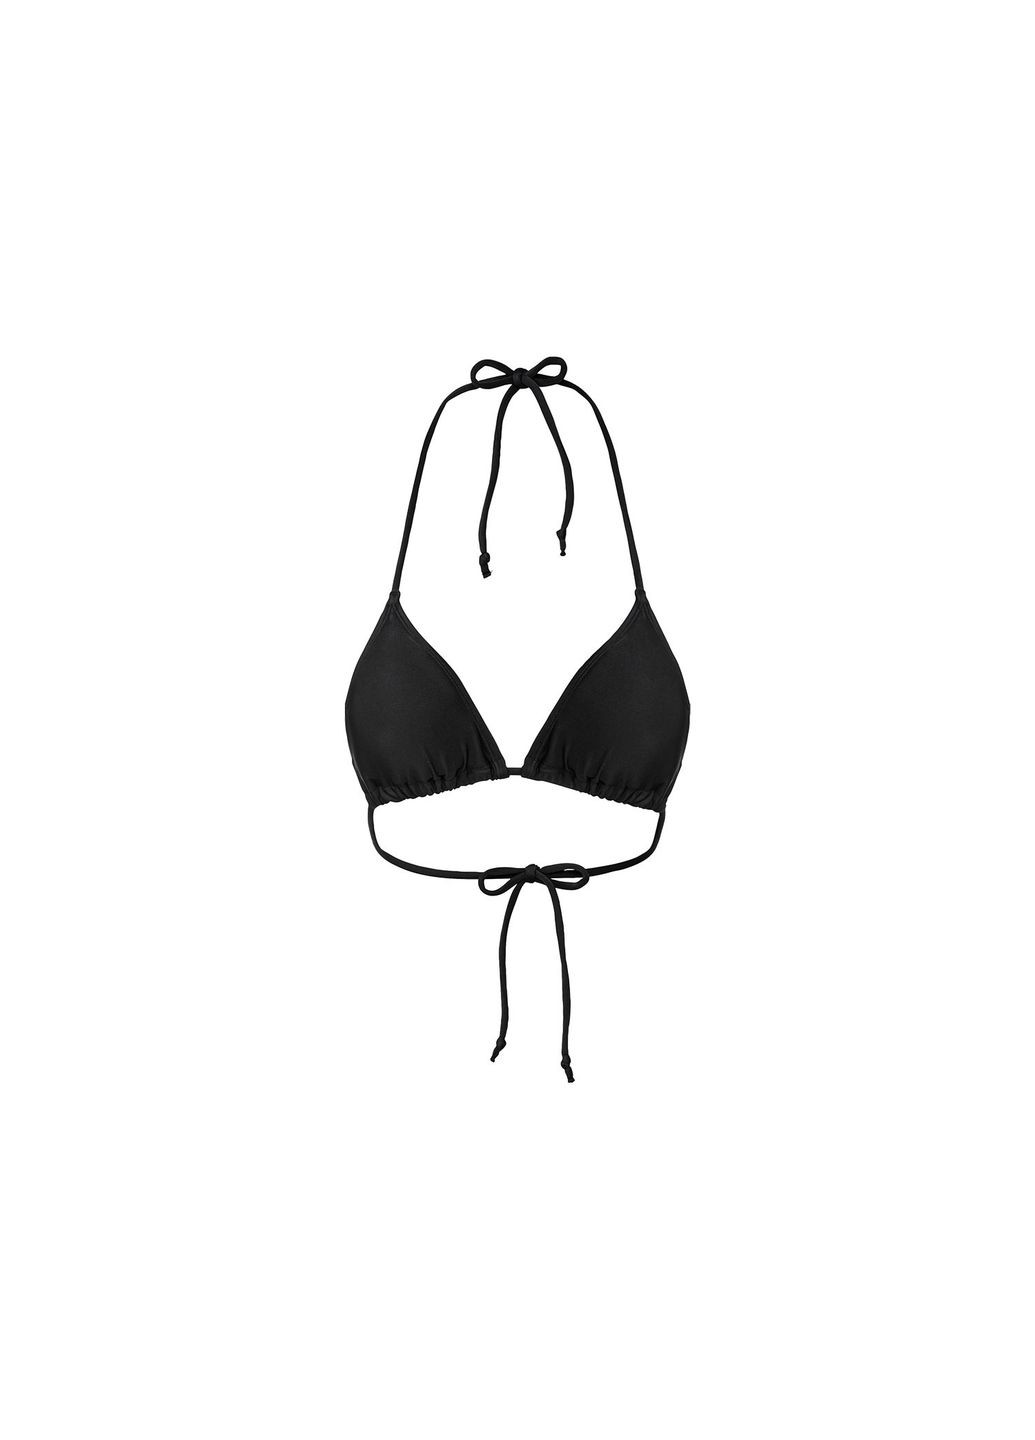 Черный купальник раздельный на подкладке для женщины lycra® 407621-1 бикини Esmara